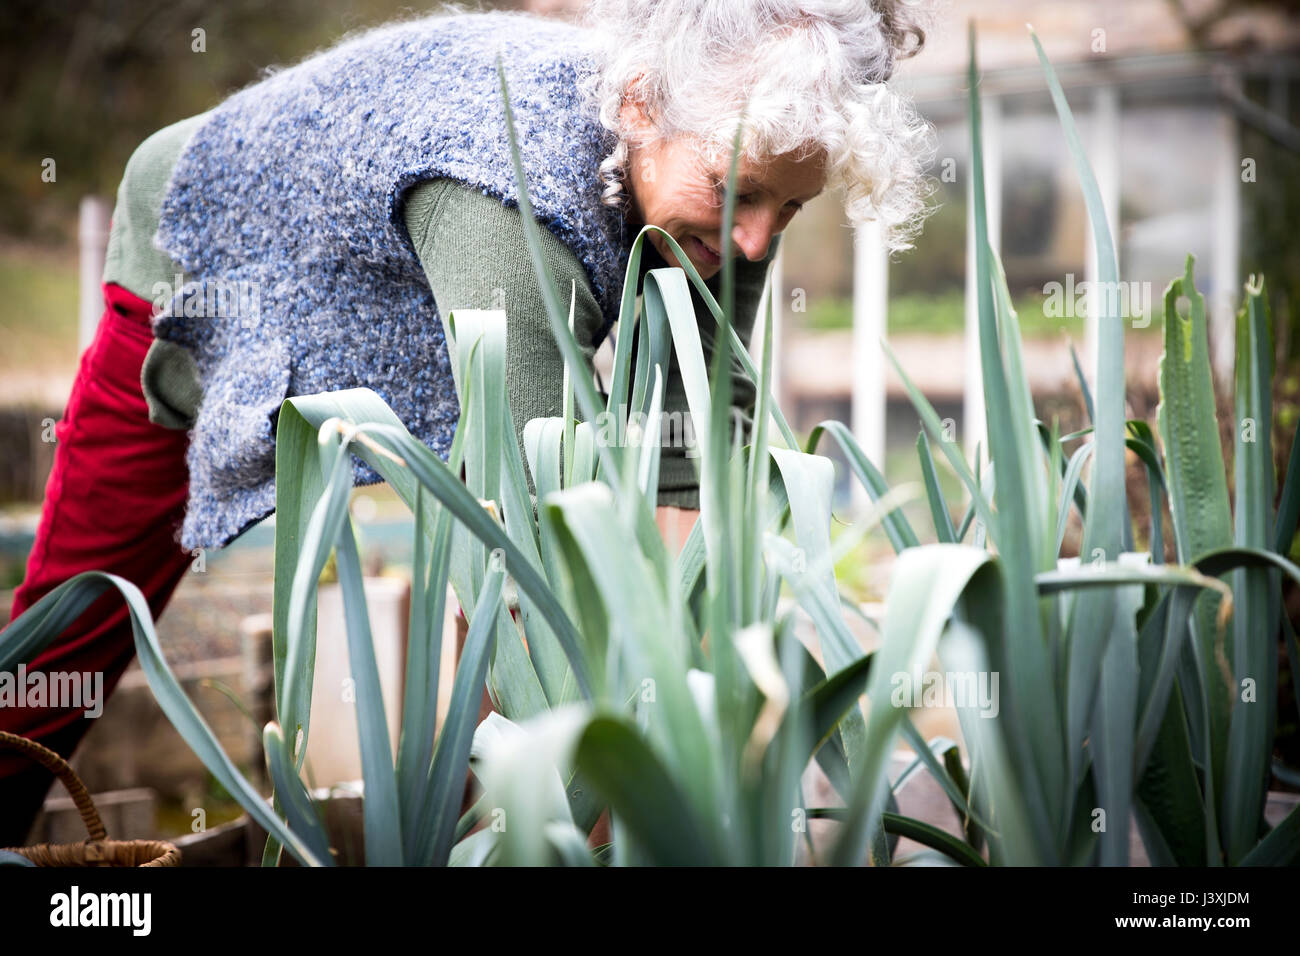 Mature woman tending leeks in garden Stock Photo